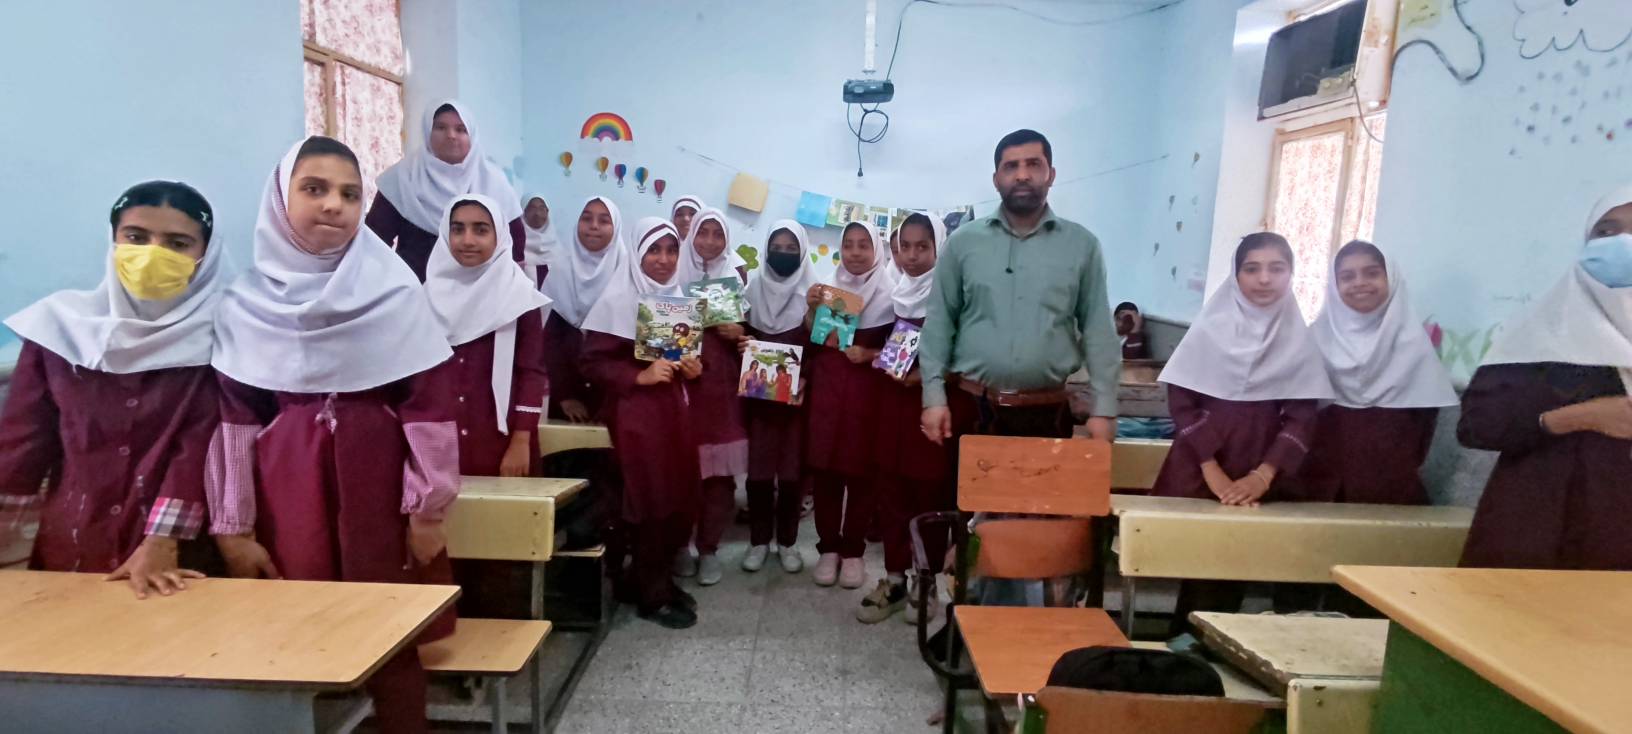 اولین نشست کتابخوان مدرسه ای در سال جدید در دبستان هاجر بند ملا شهرستان رودان برگزار شد